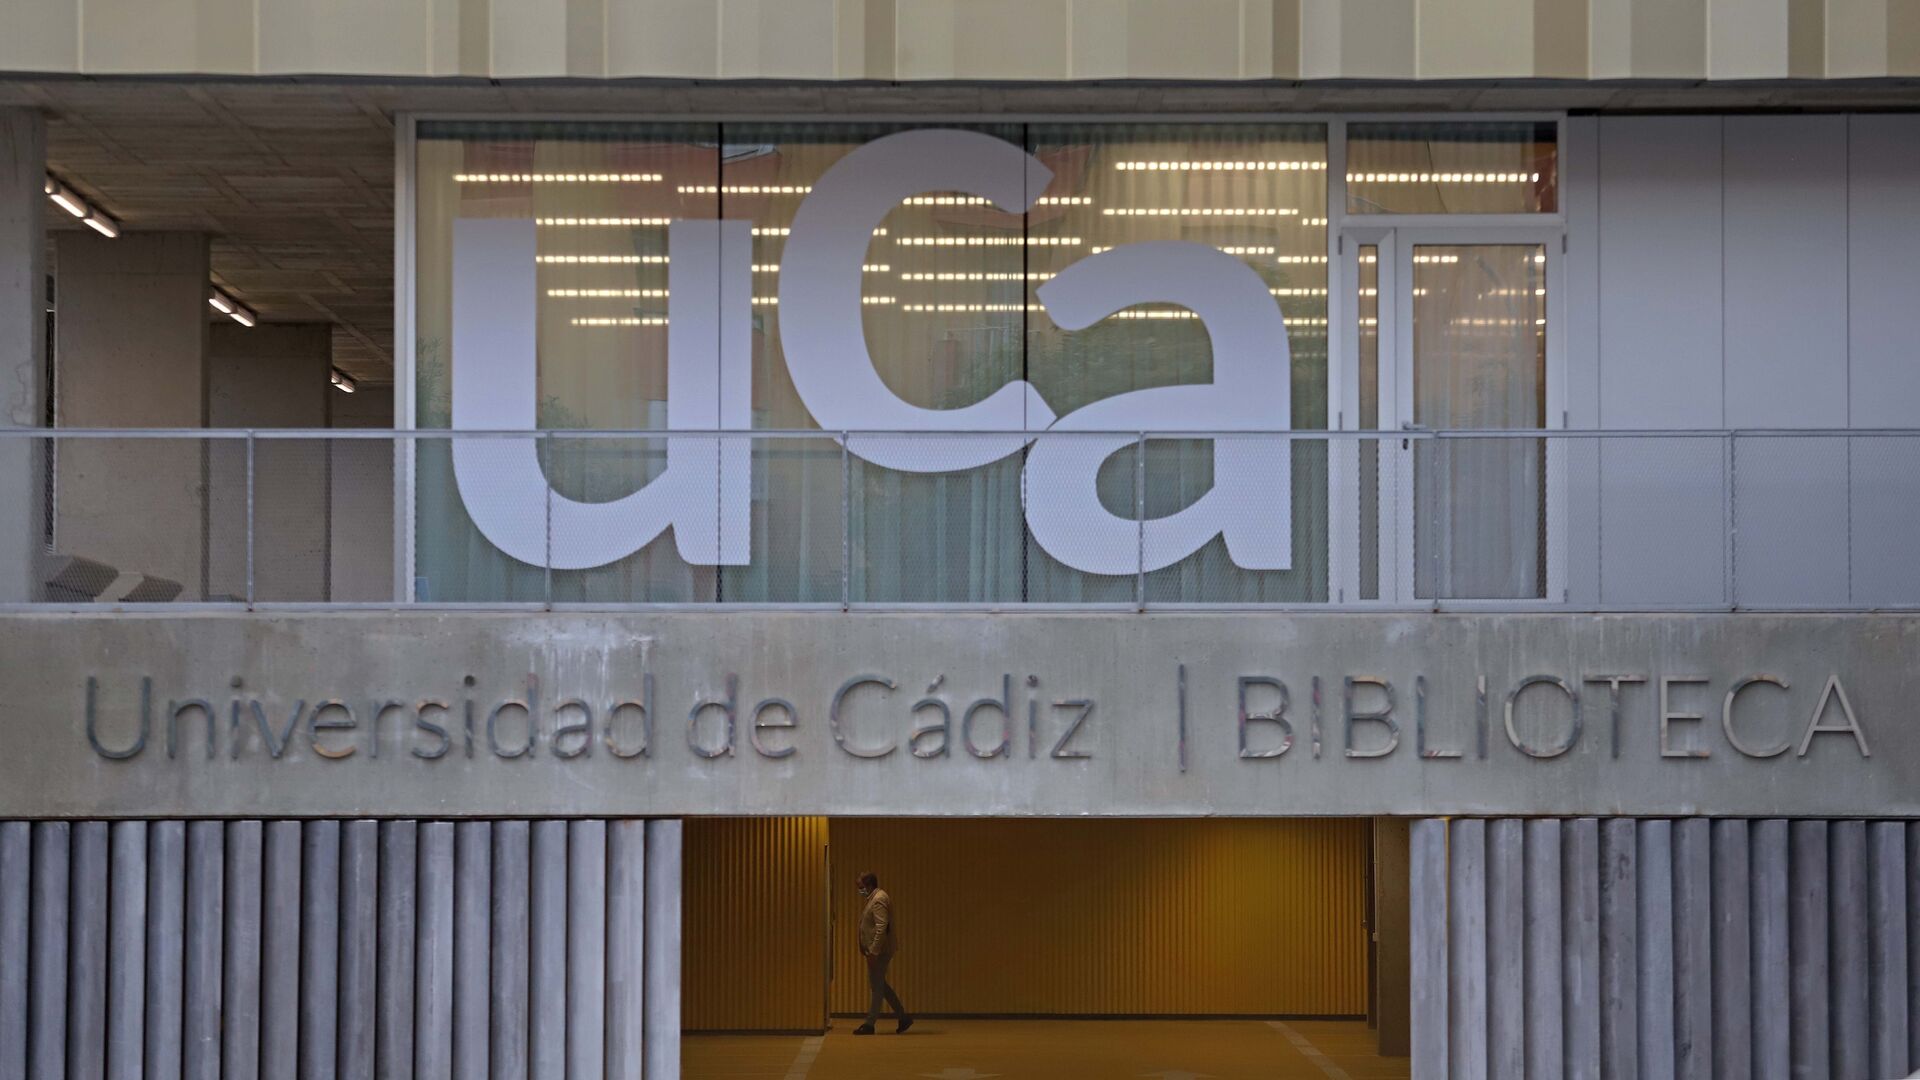 La UCA inaugura su nueva biblioteca en Algeciras tras una inversi&oacute;n superior a los 3 millones de euros.